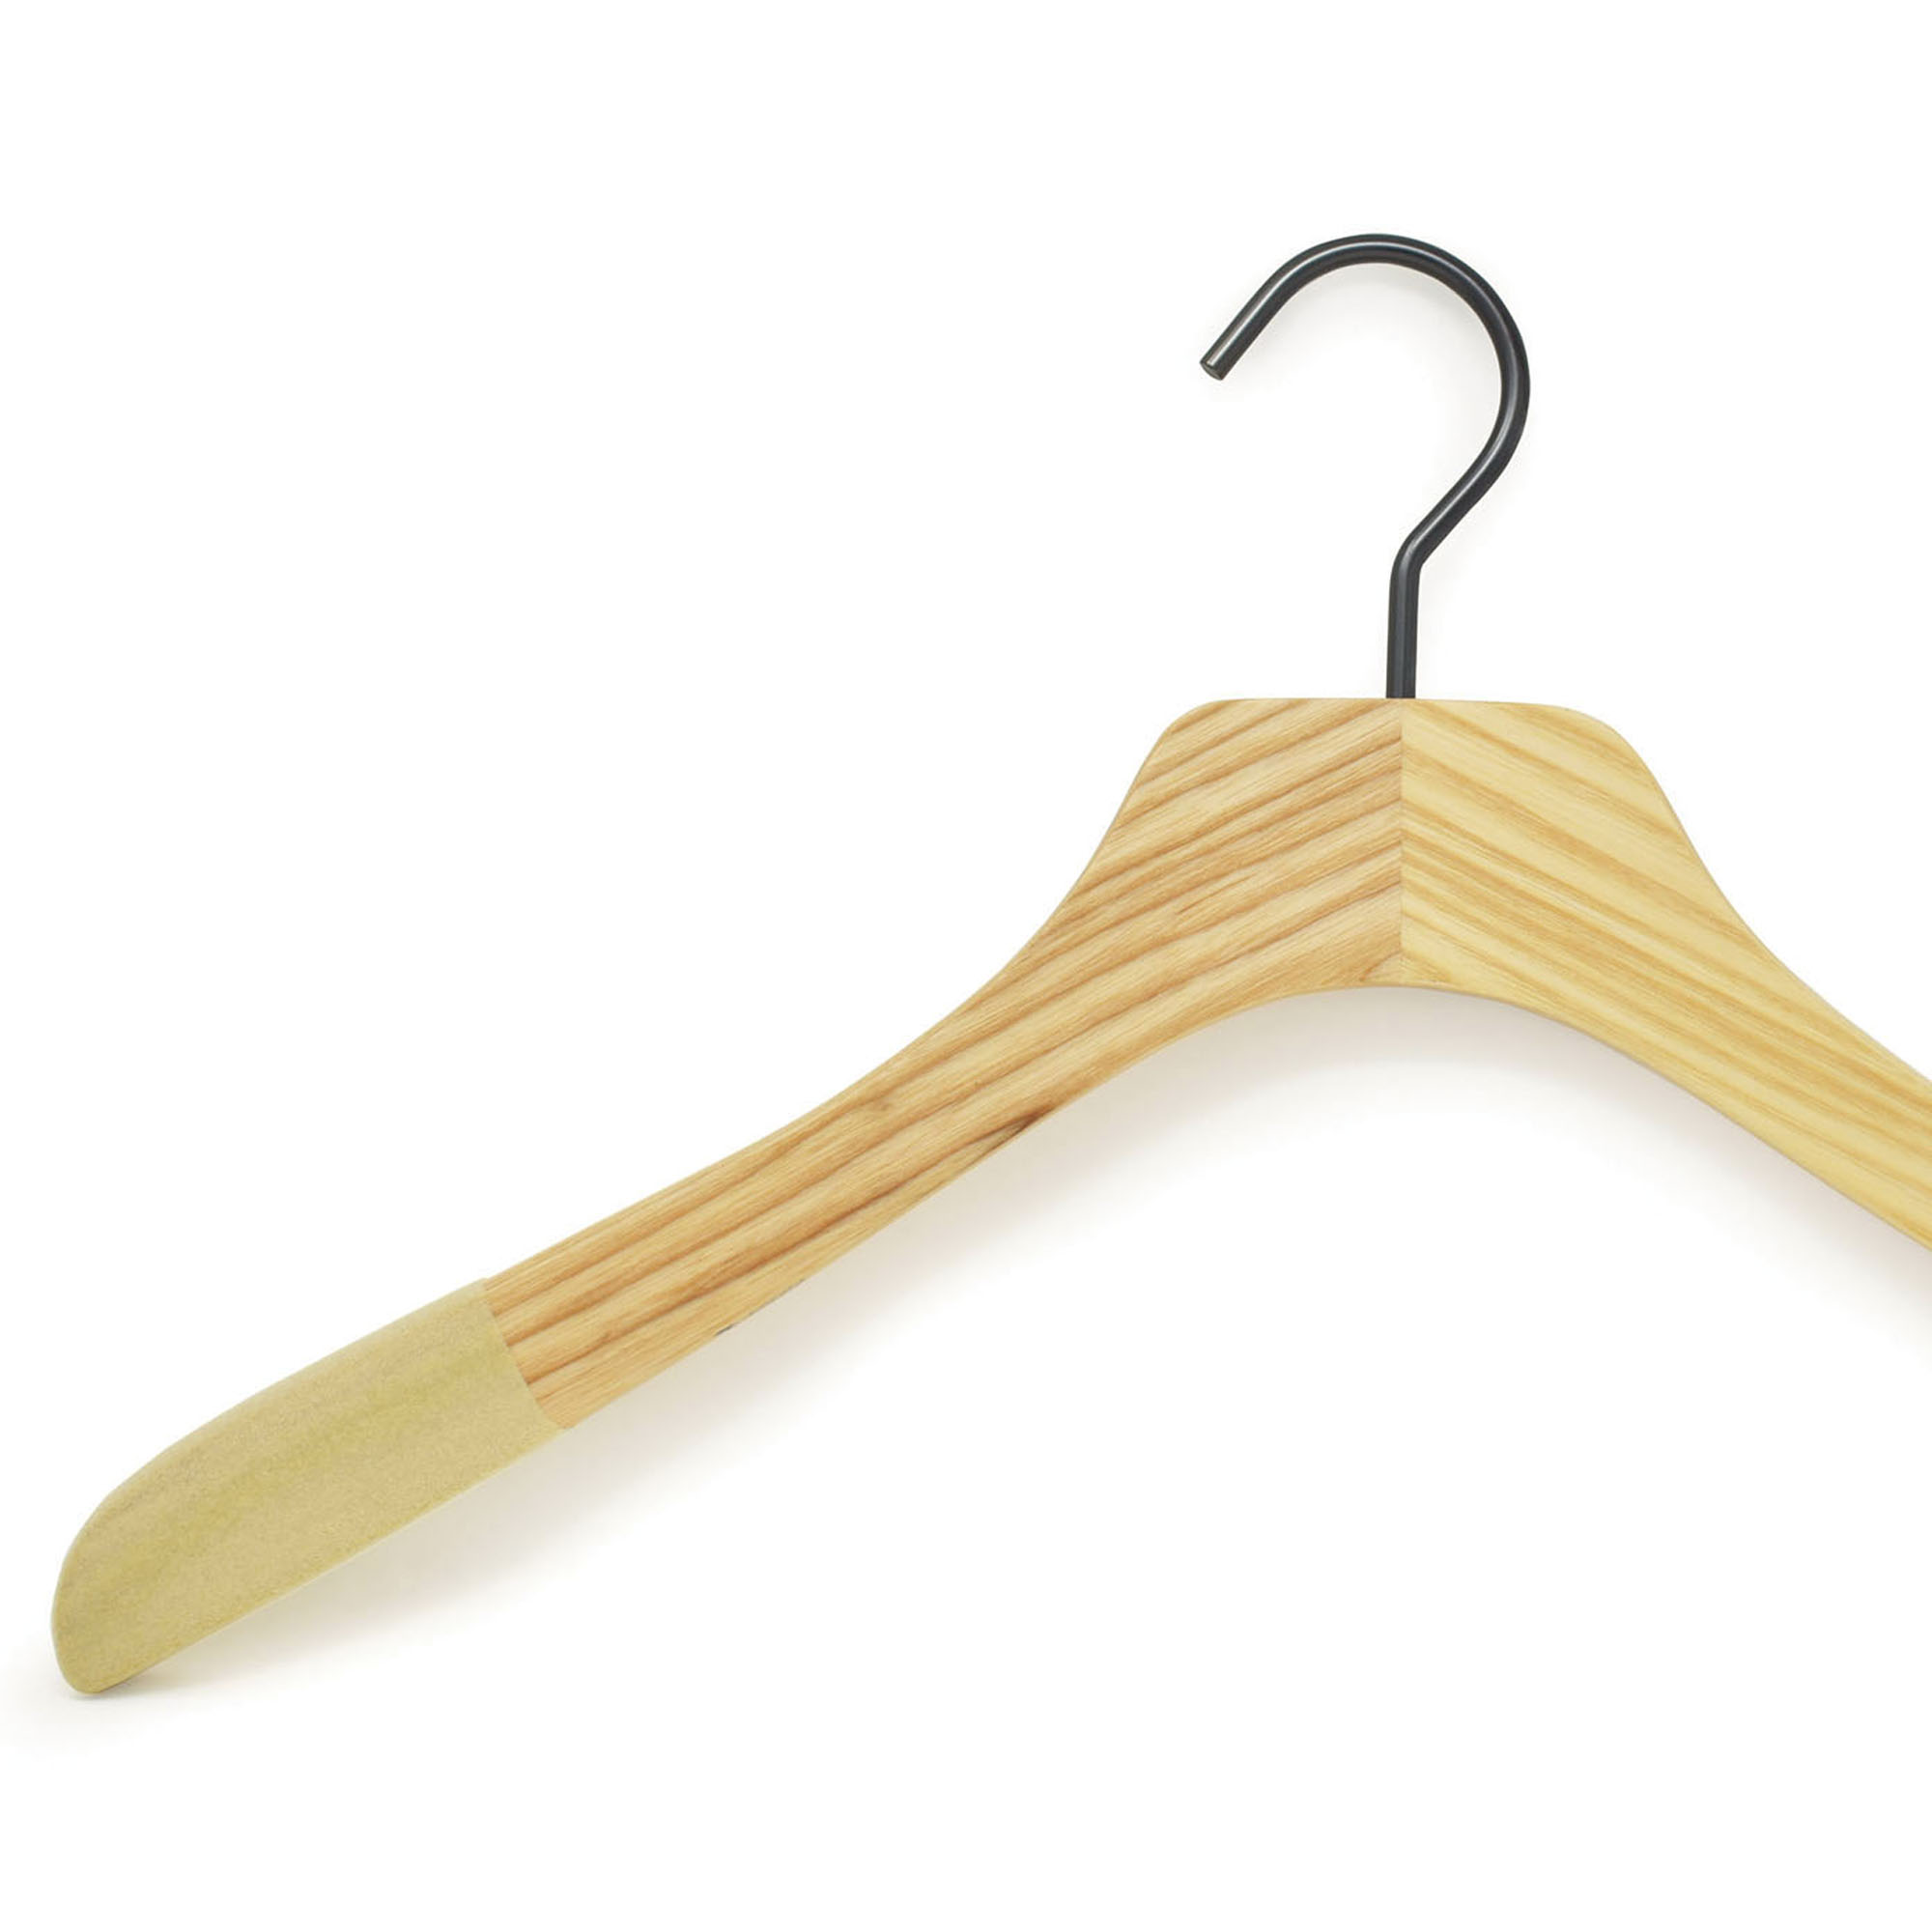 Wooden hangers for shirts, with velvet anti-slip